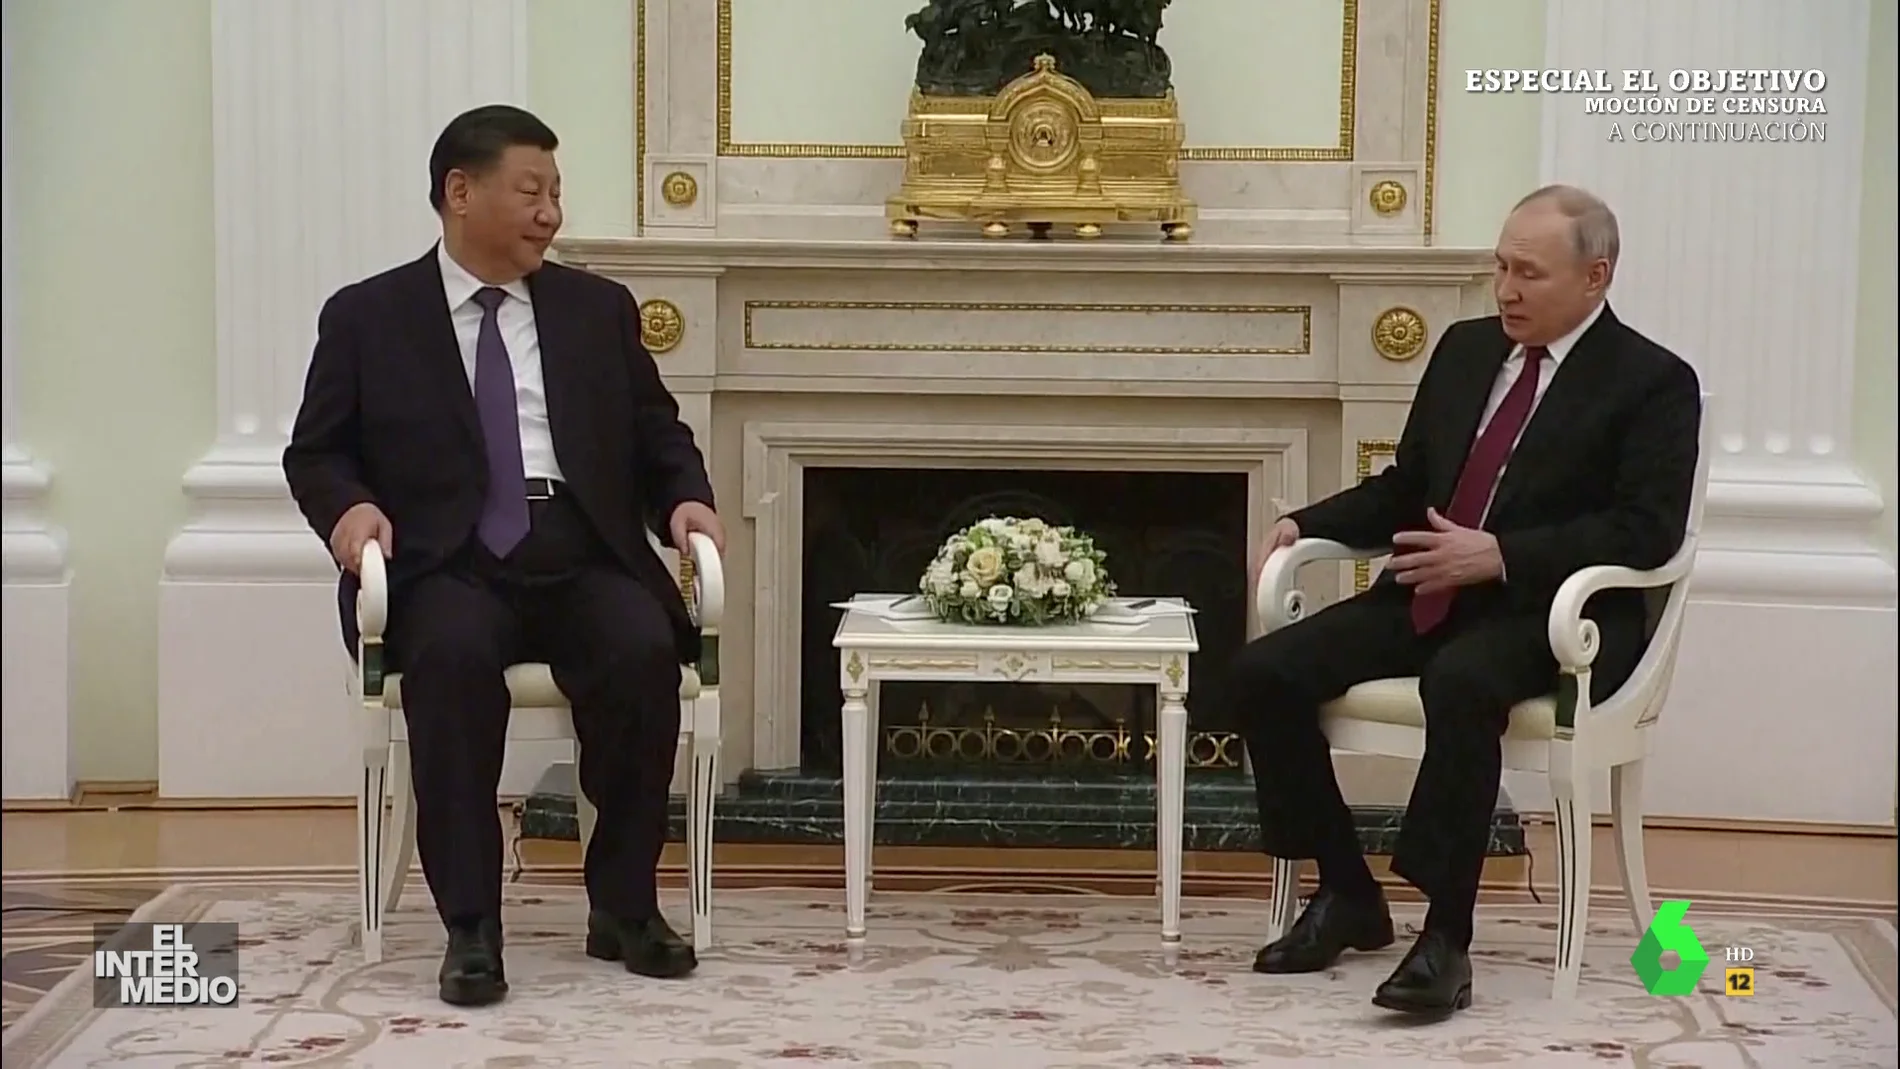 Vídeo manipulado - Vladimir Putin hechiza a Xi Jinping con su discurso en el Kremlin